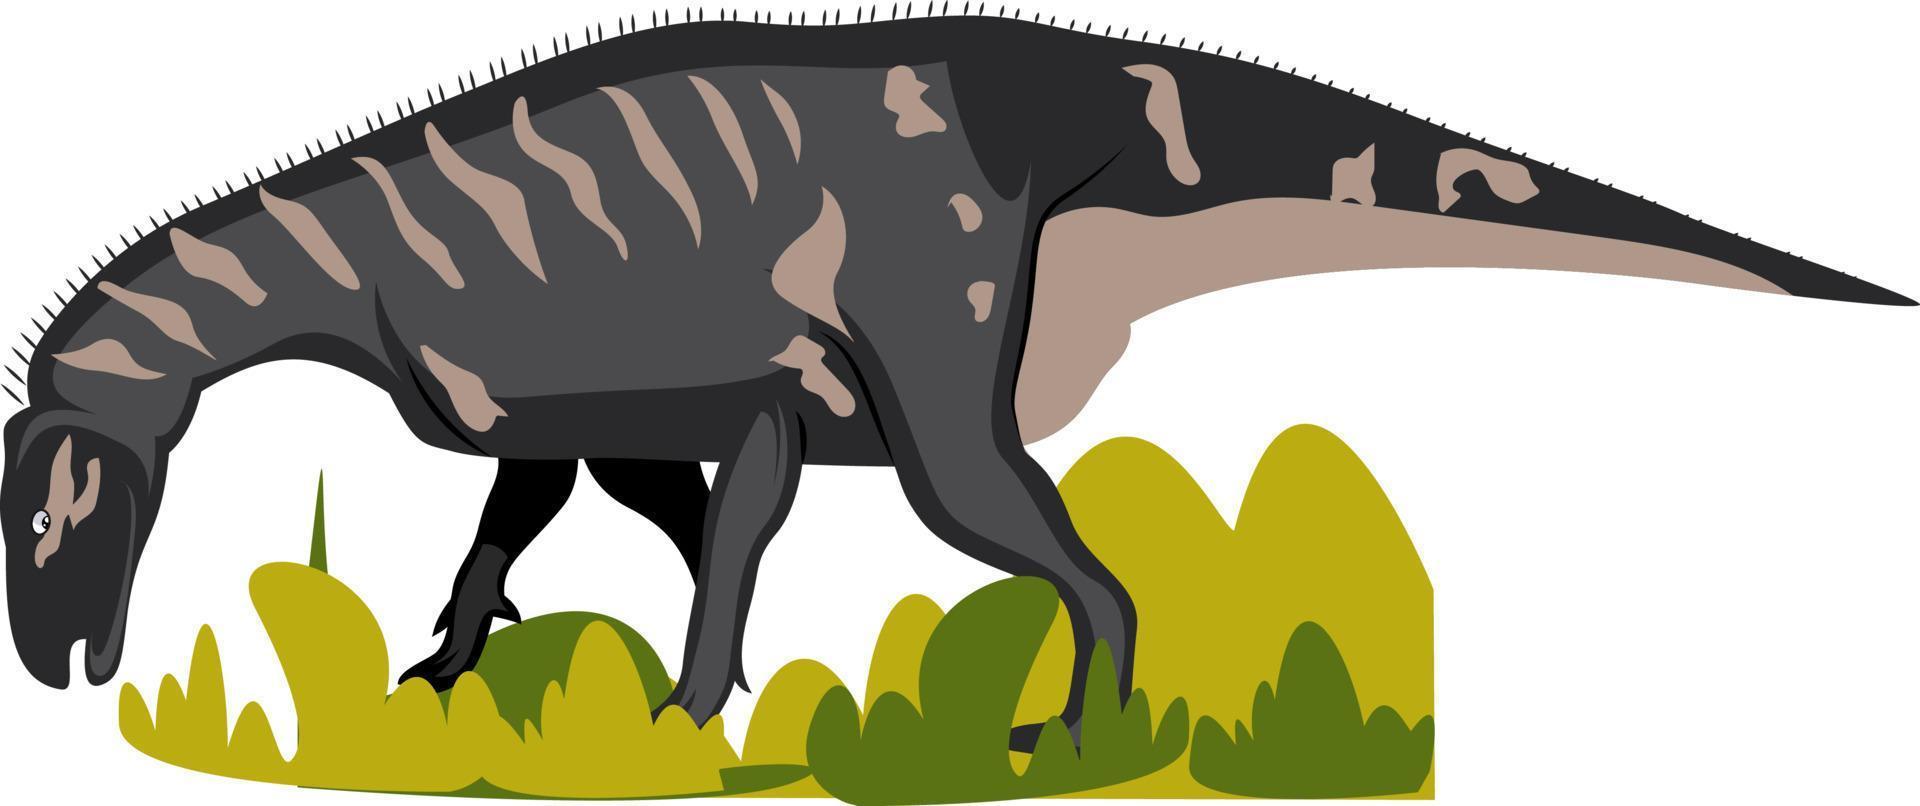 Iguanodon, illustration, vector on white background.